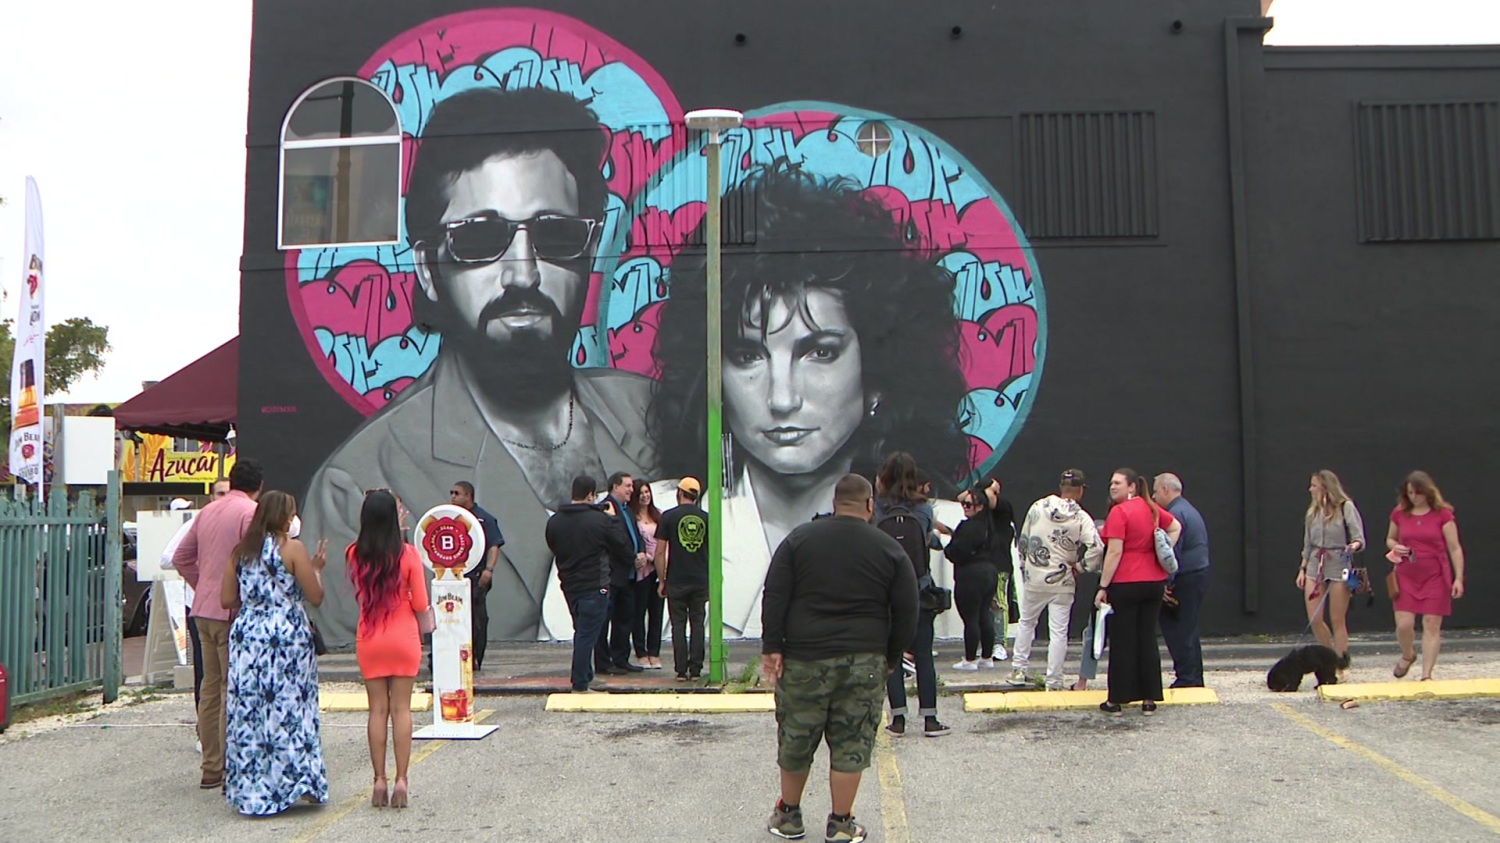  En honor a Gloria y Emilio Estefan, develan mural en Miami